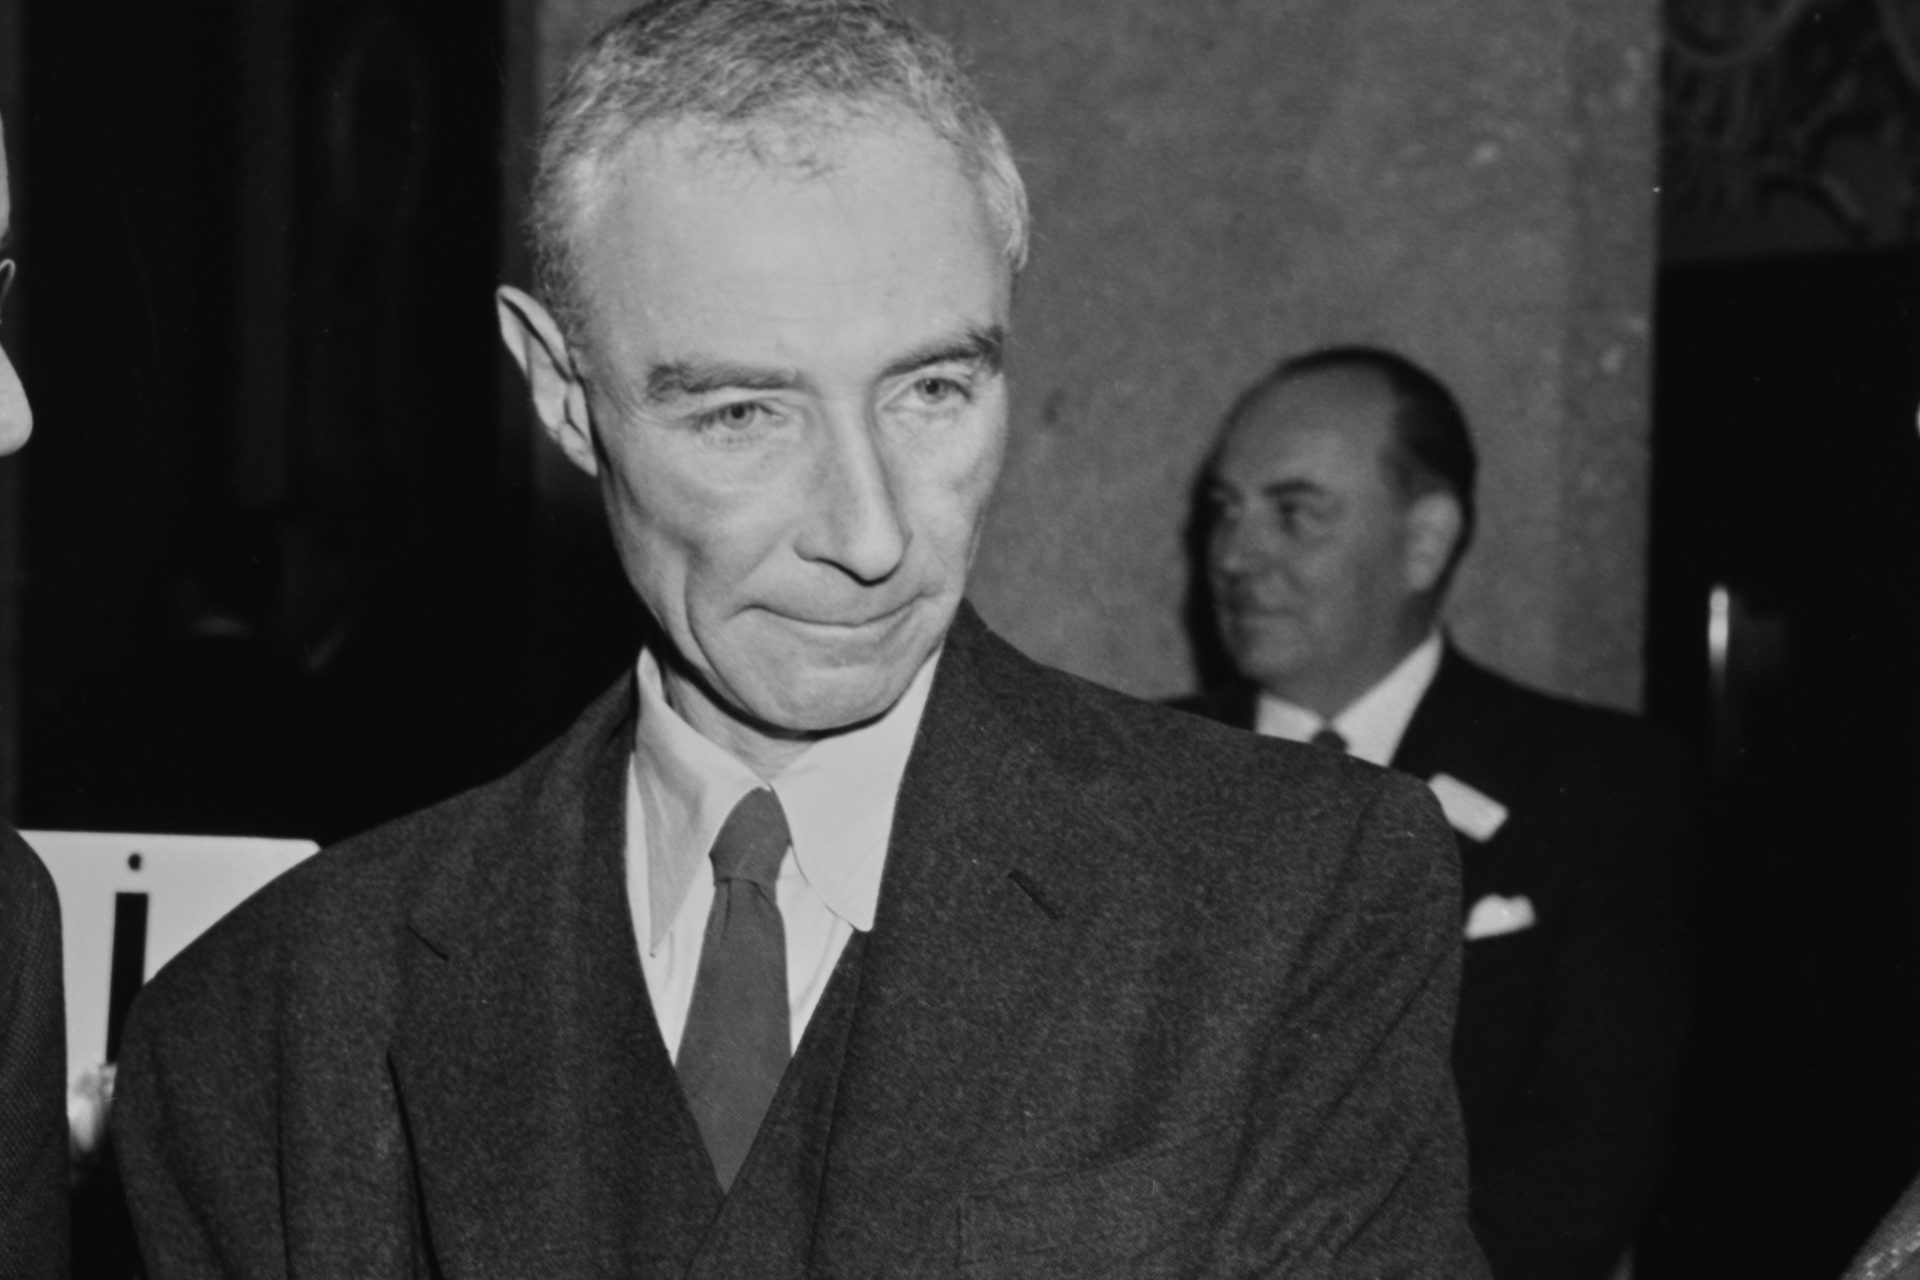 The end of Oppenheimer